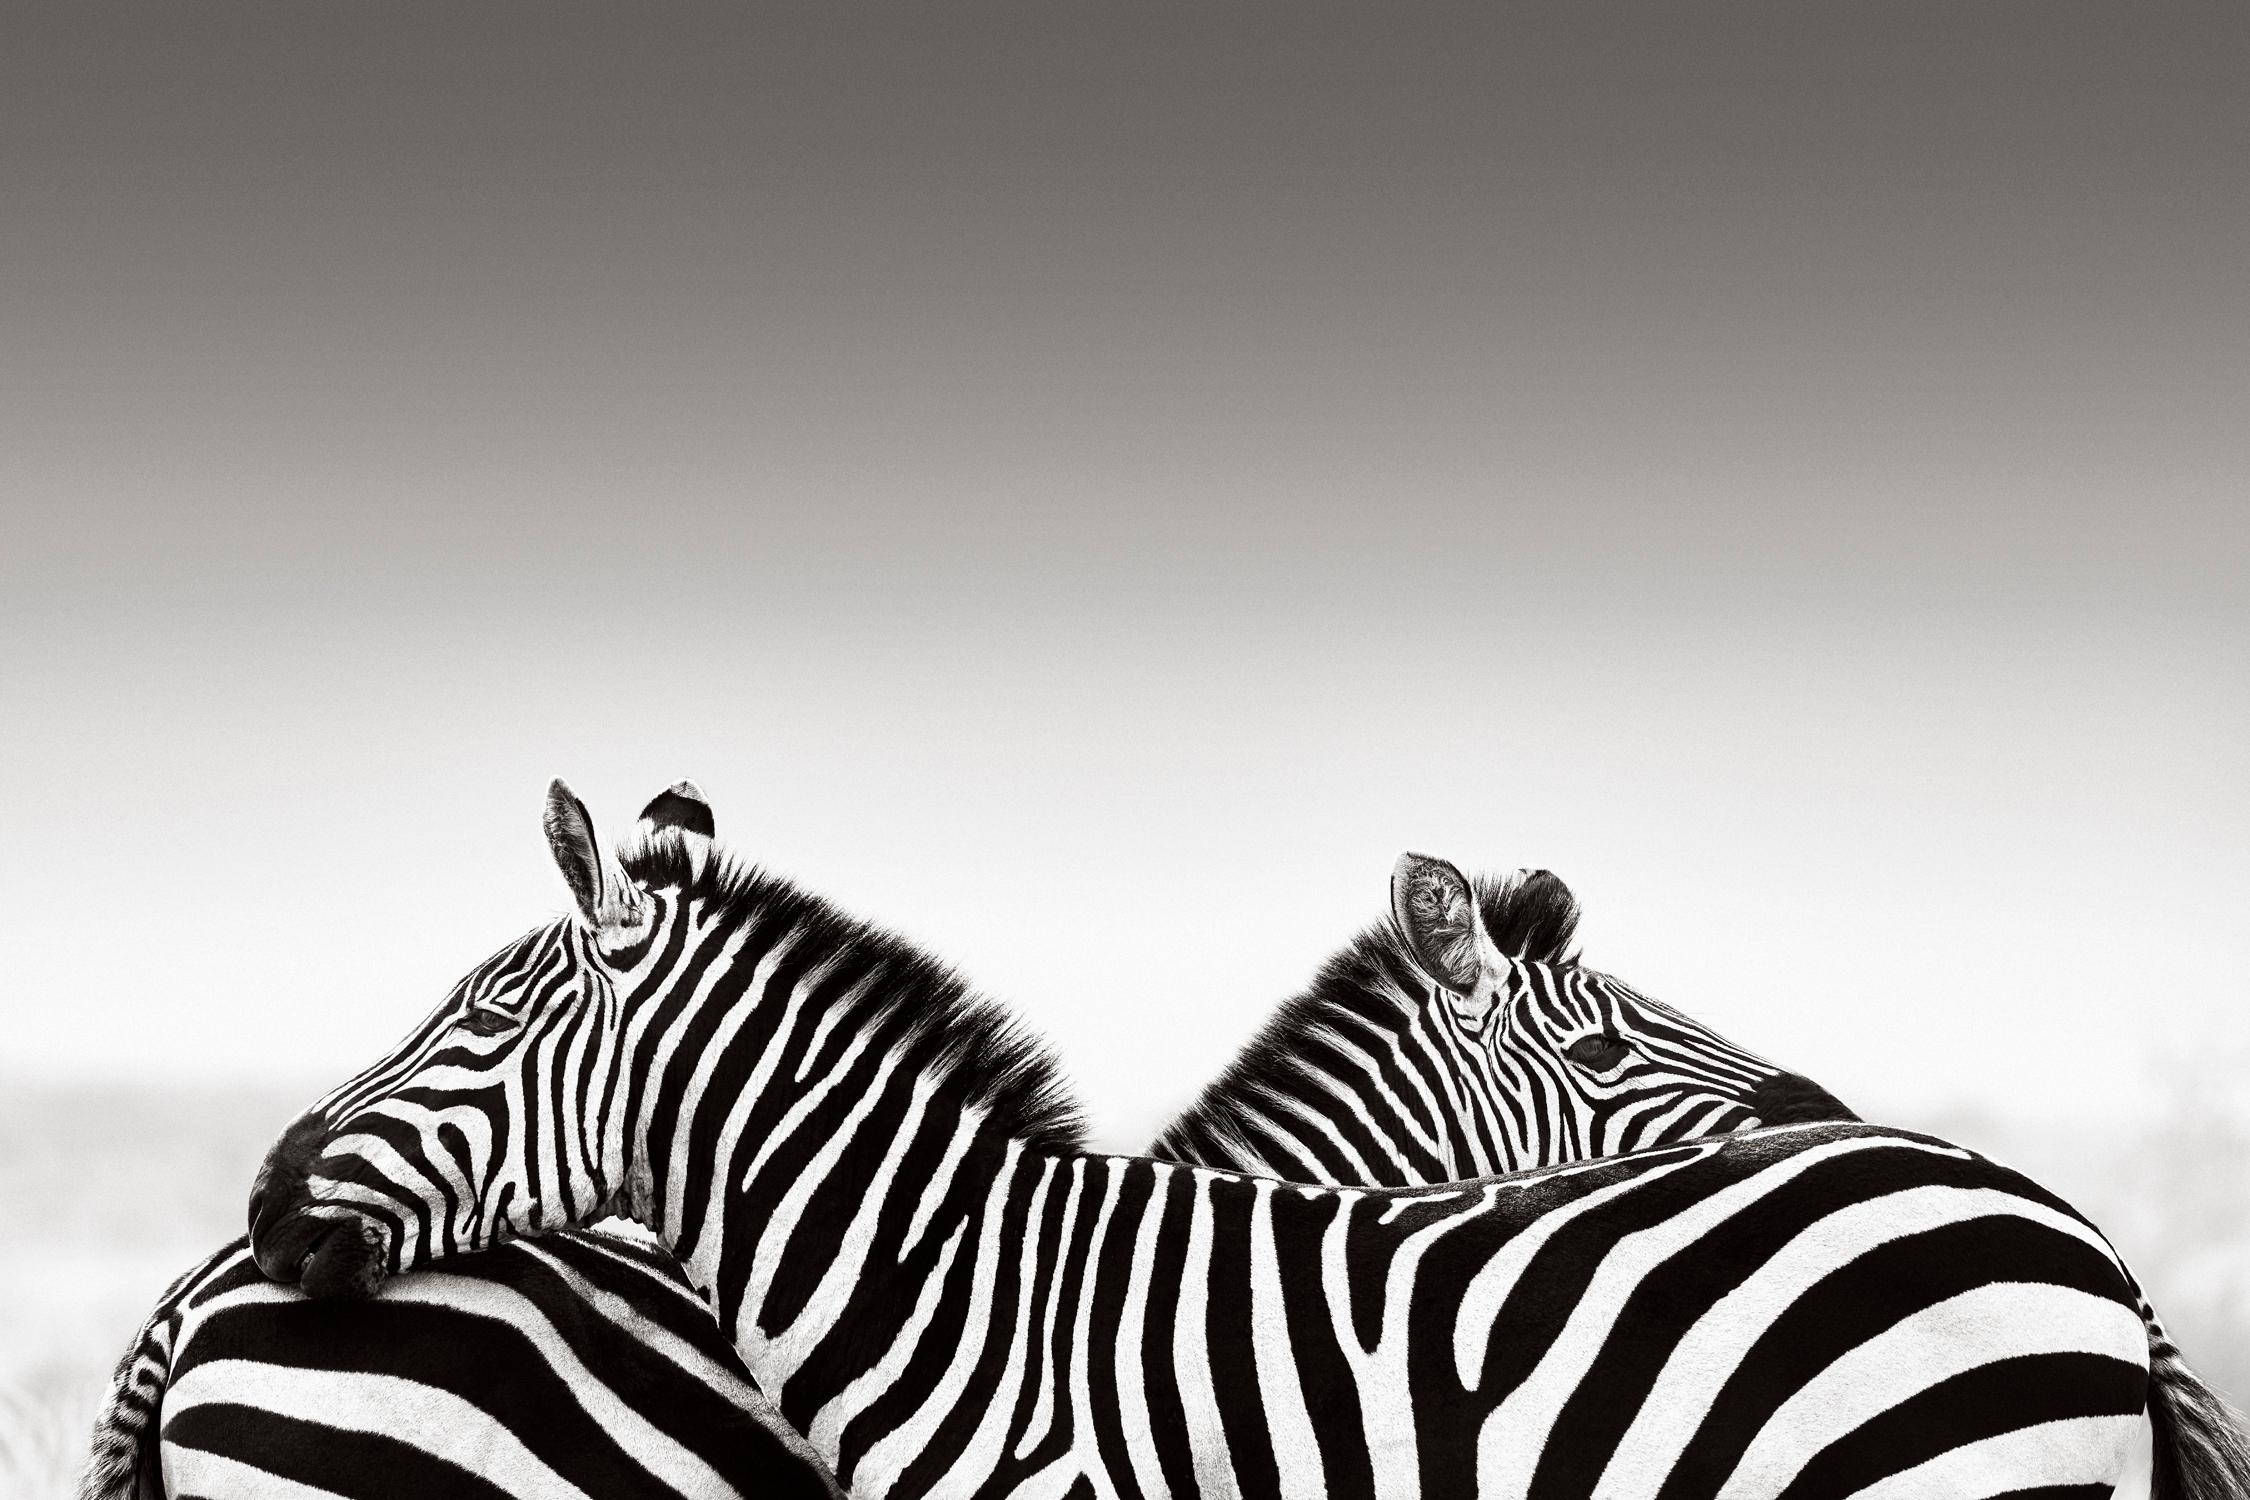 Drew Doggett Black and White Photograph – Zwei Zebras vor einem minimalistischen Hintergrund, Design-inspiriert